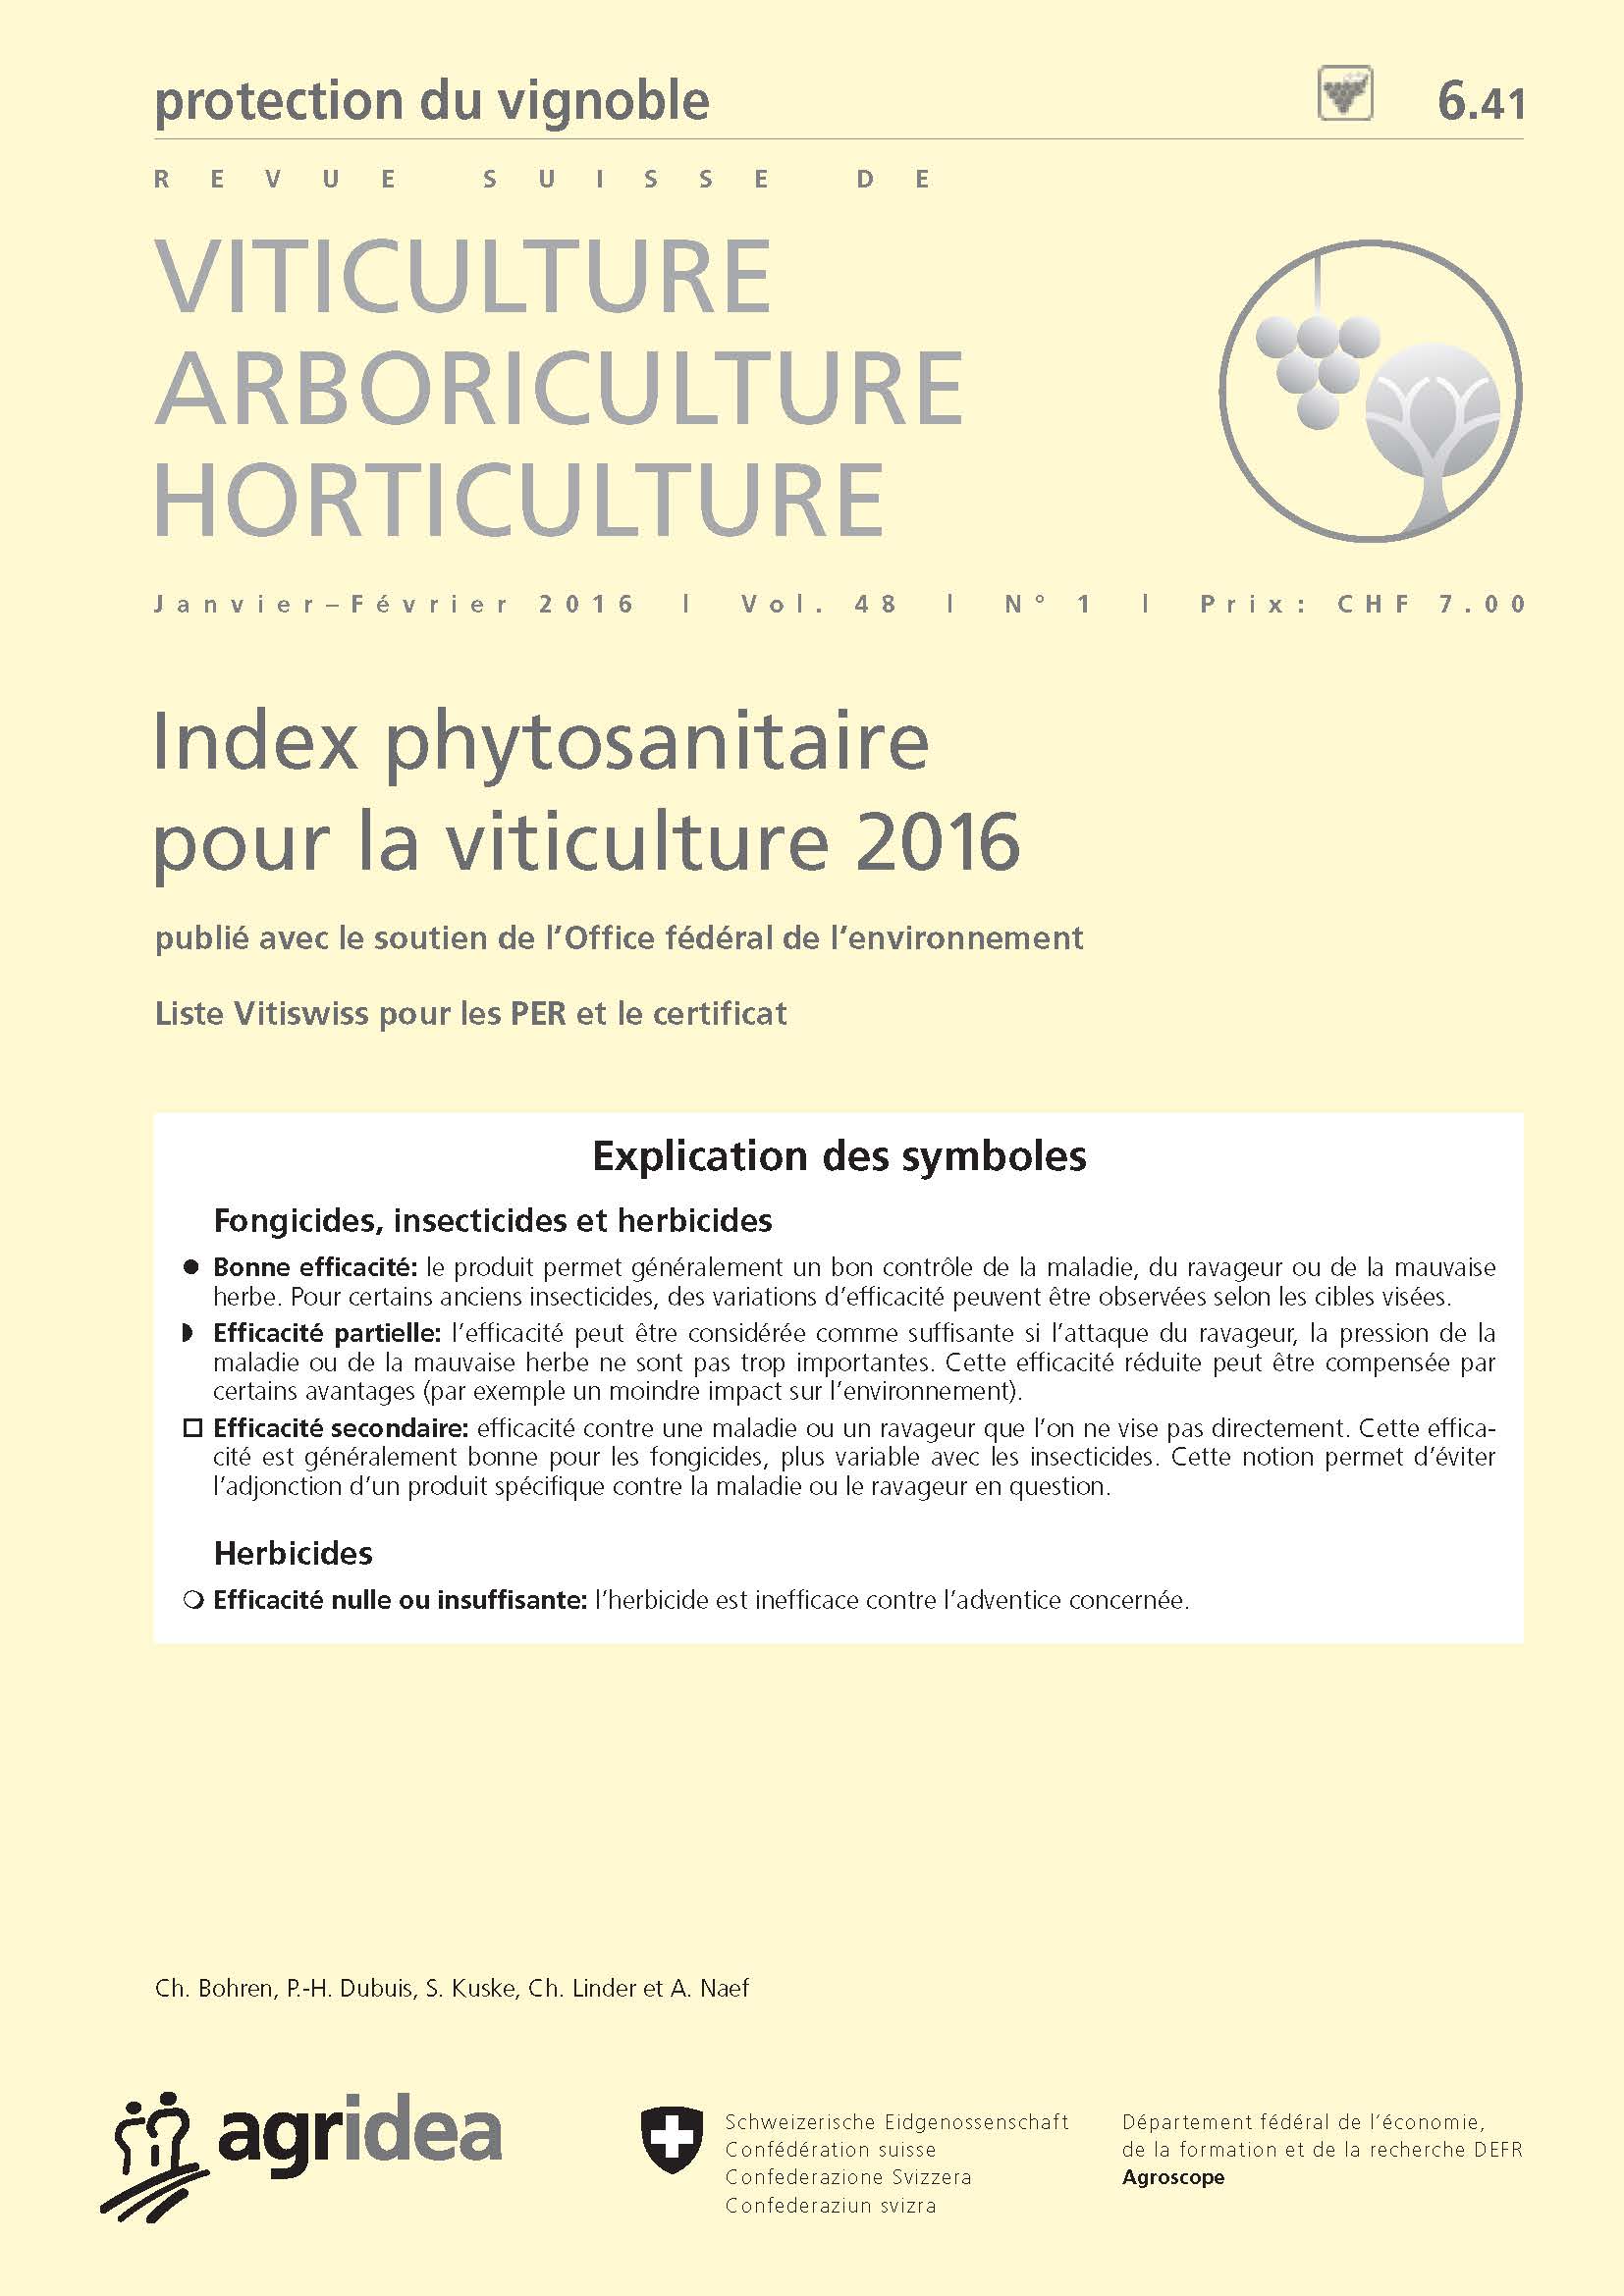 Index phytosanitaire pour la viticulture 2016